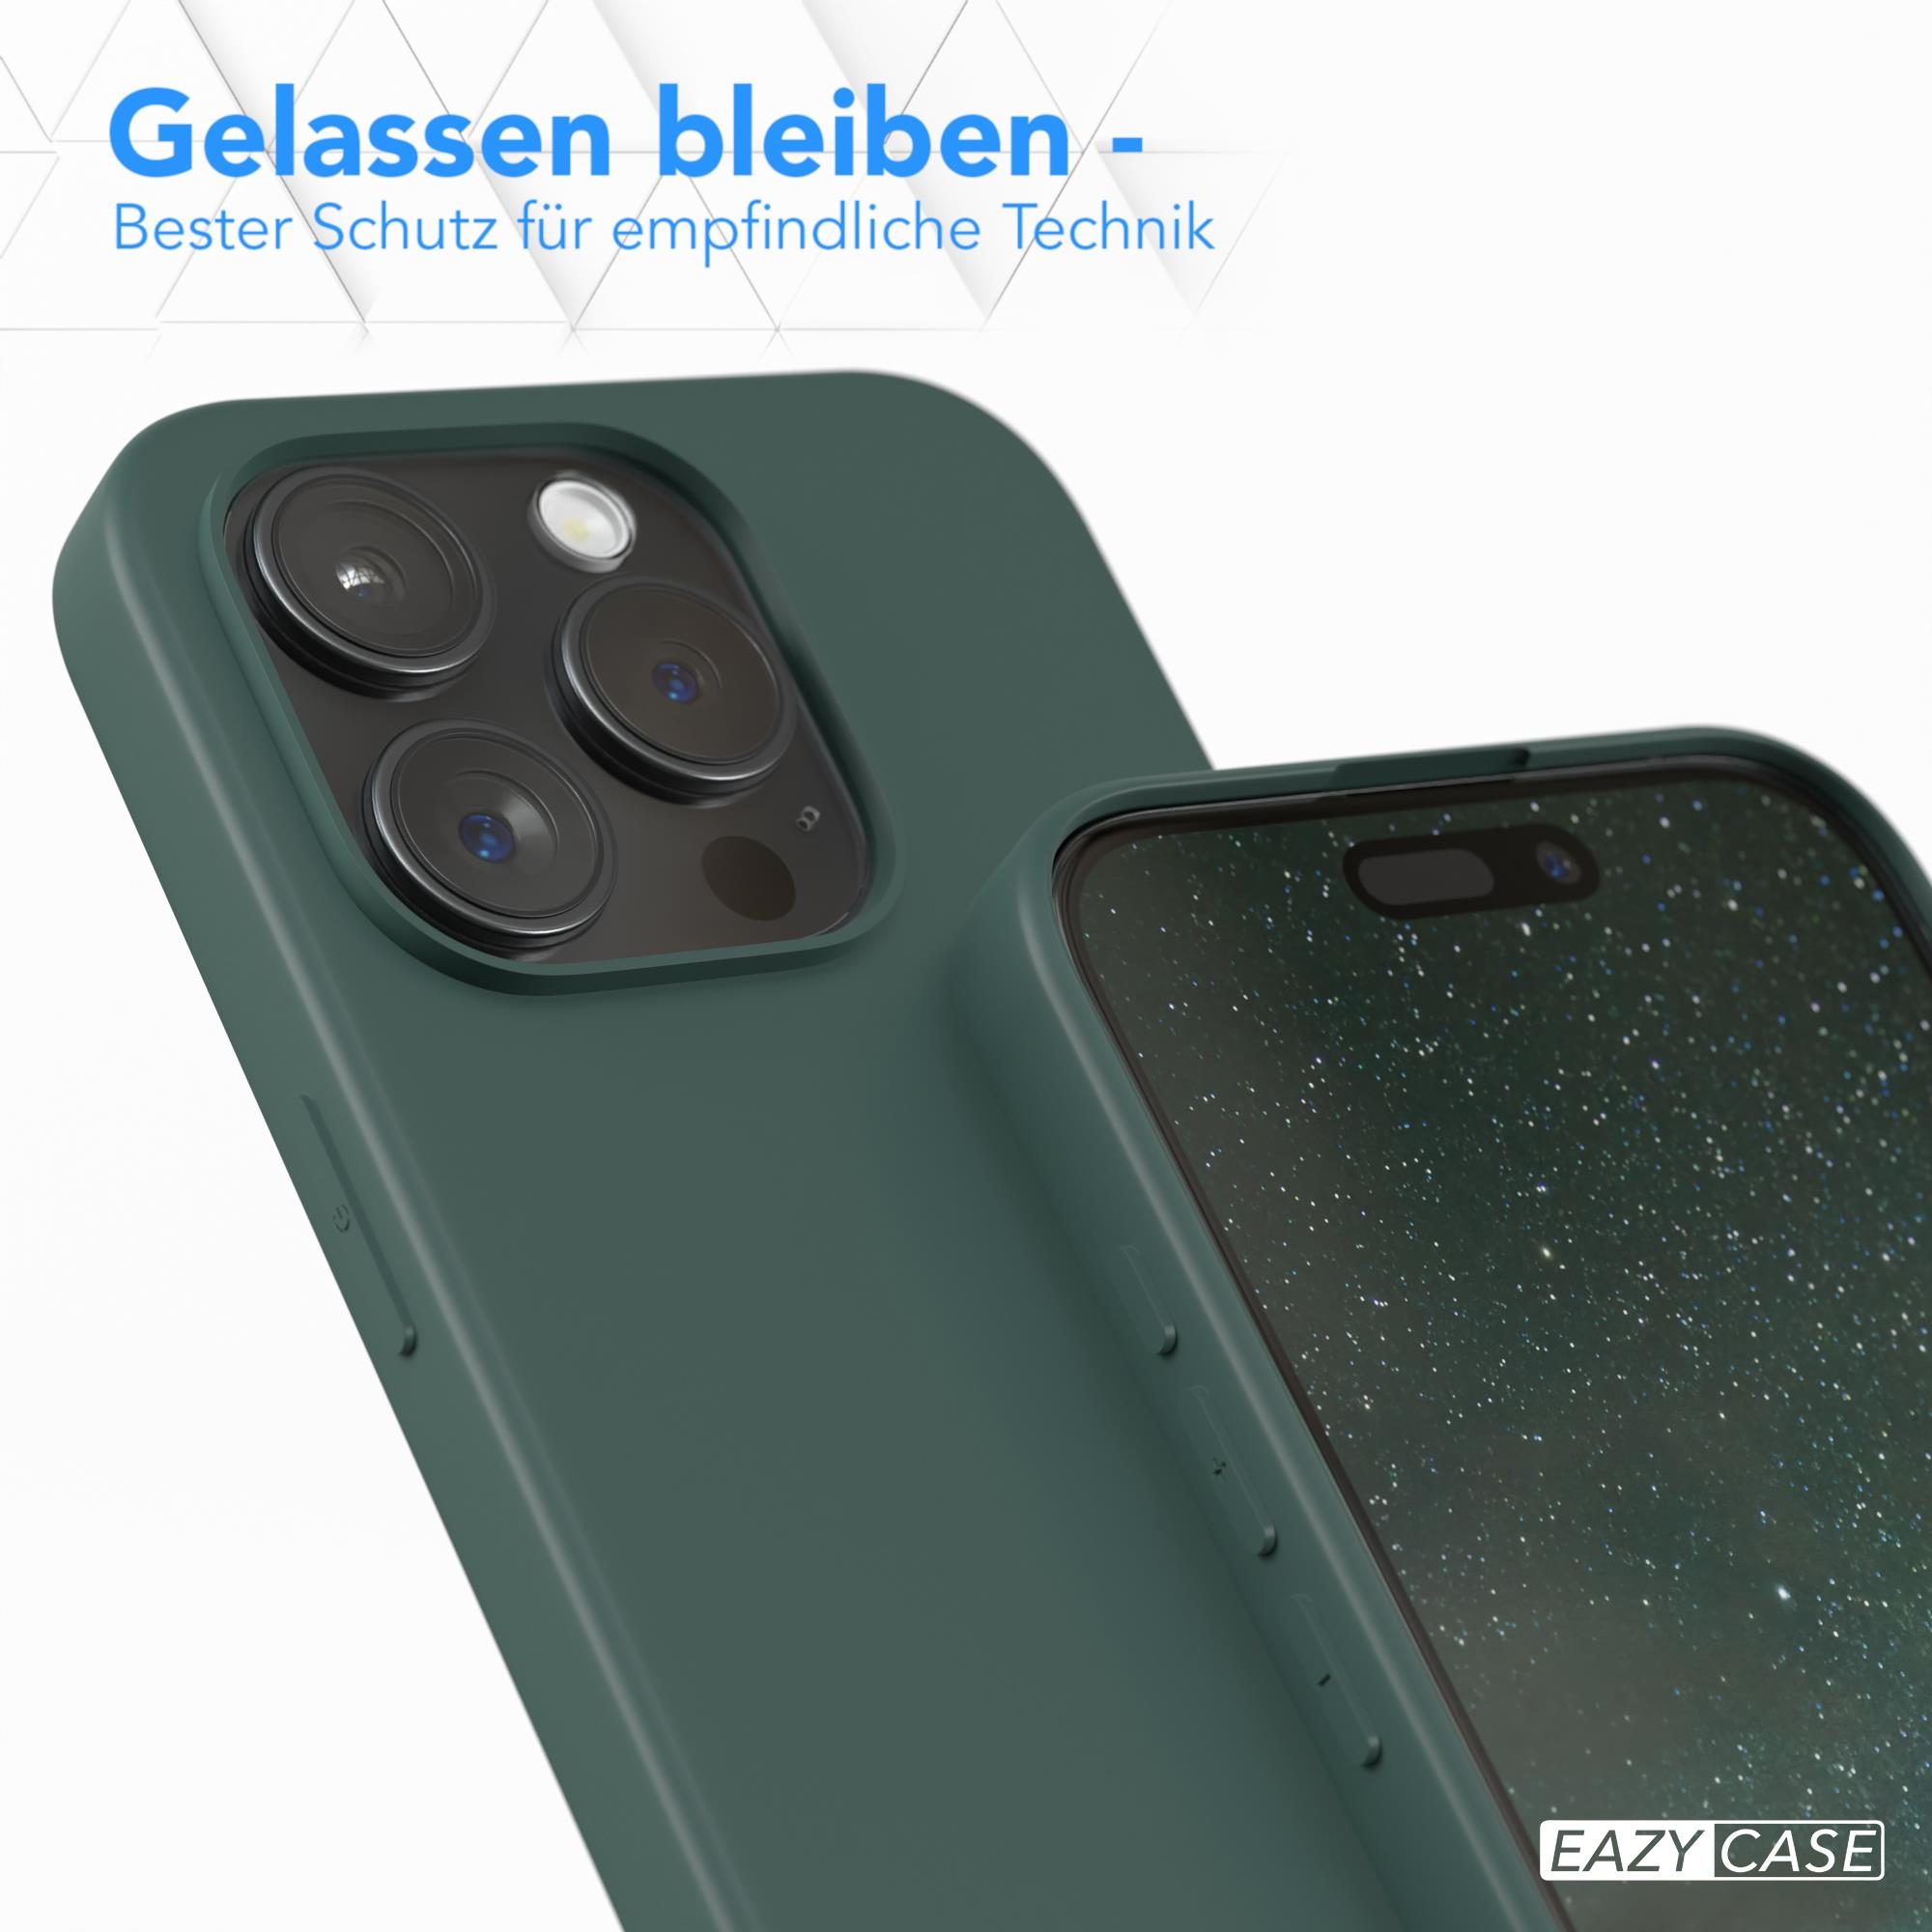 EAZY CASE TPU Silikon Handycase / 15 iPhone Backcover, Grün Matt, Apple, Nachtgrün Pro